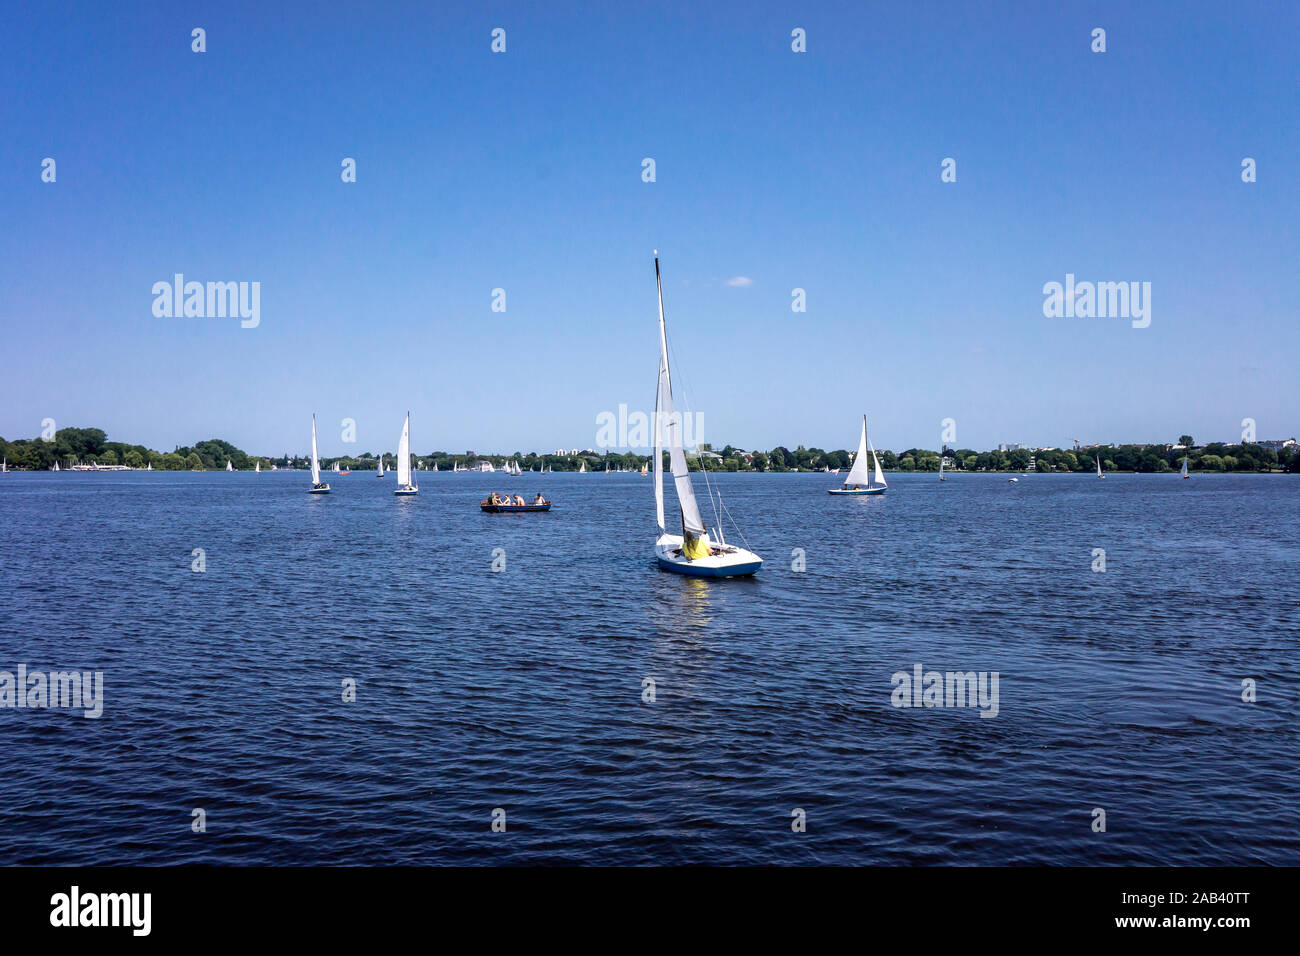 Segelboote auf der Außenalster in Hamburg |Sailing boats on the Alster lake in Hamburg| Stock Photo